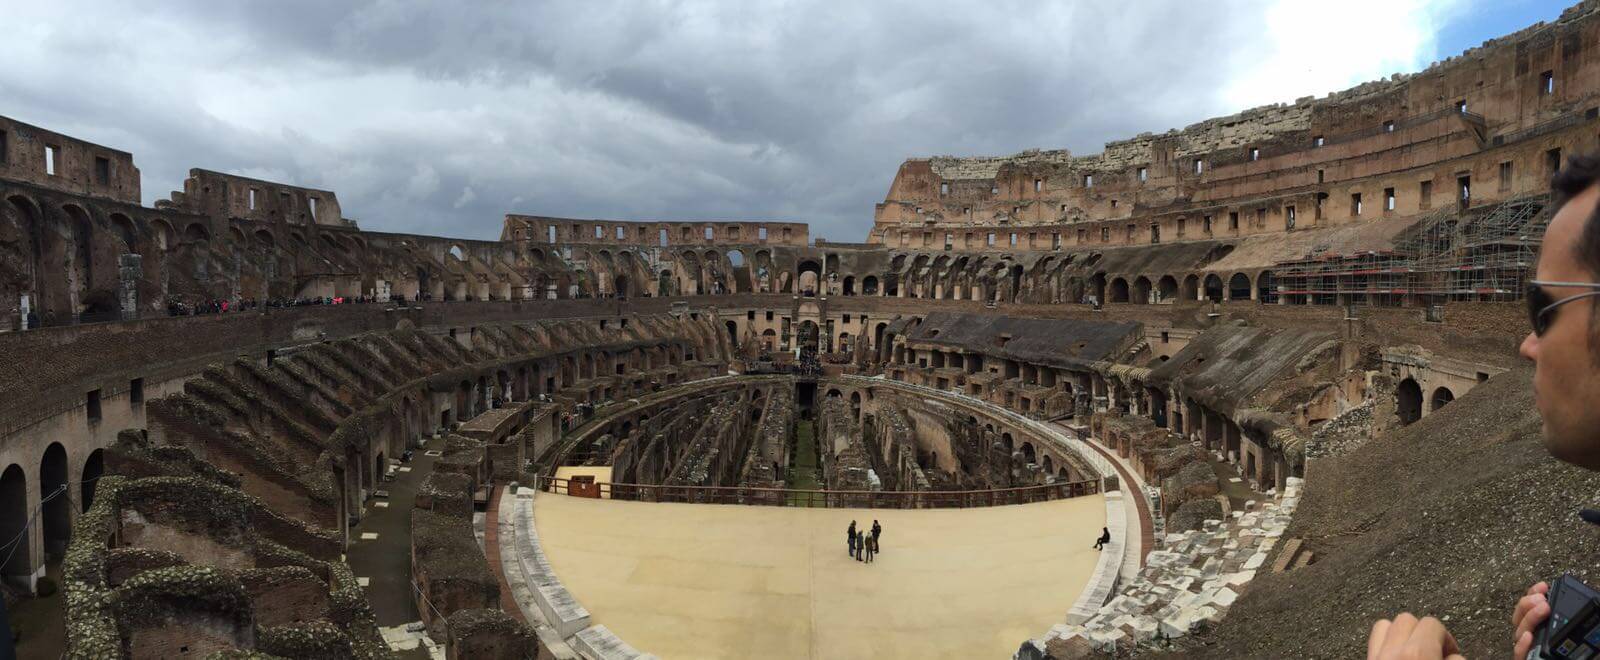 Visitar el Coliseo, el magnífico anfiteatro romano: el Hipogeo